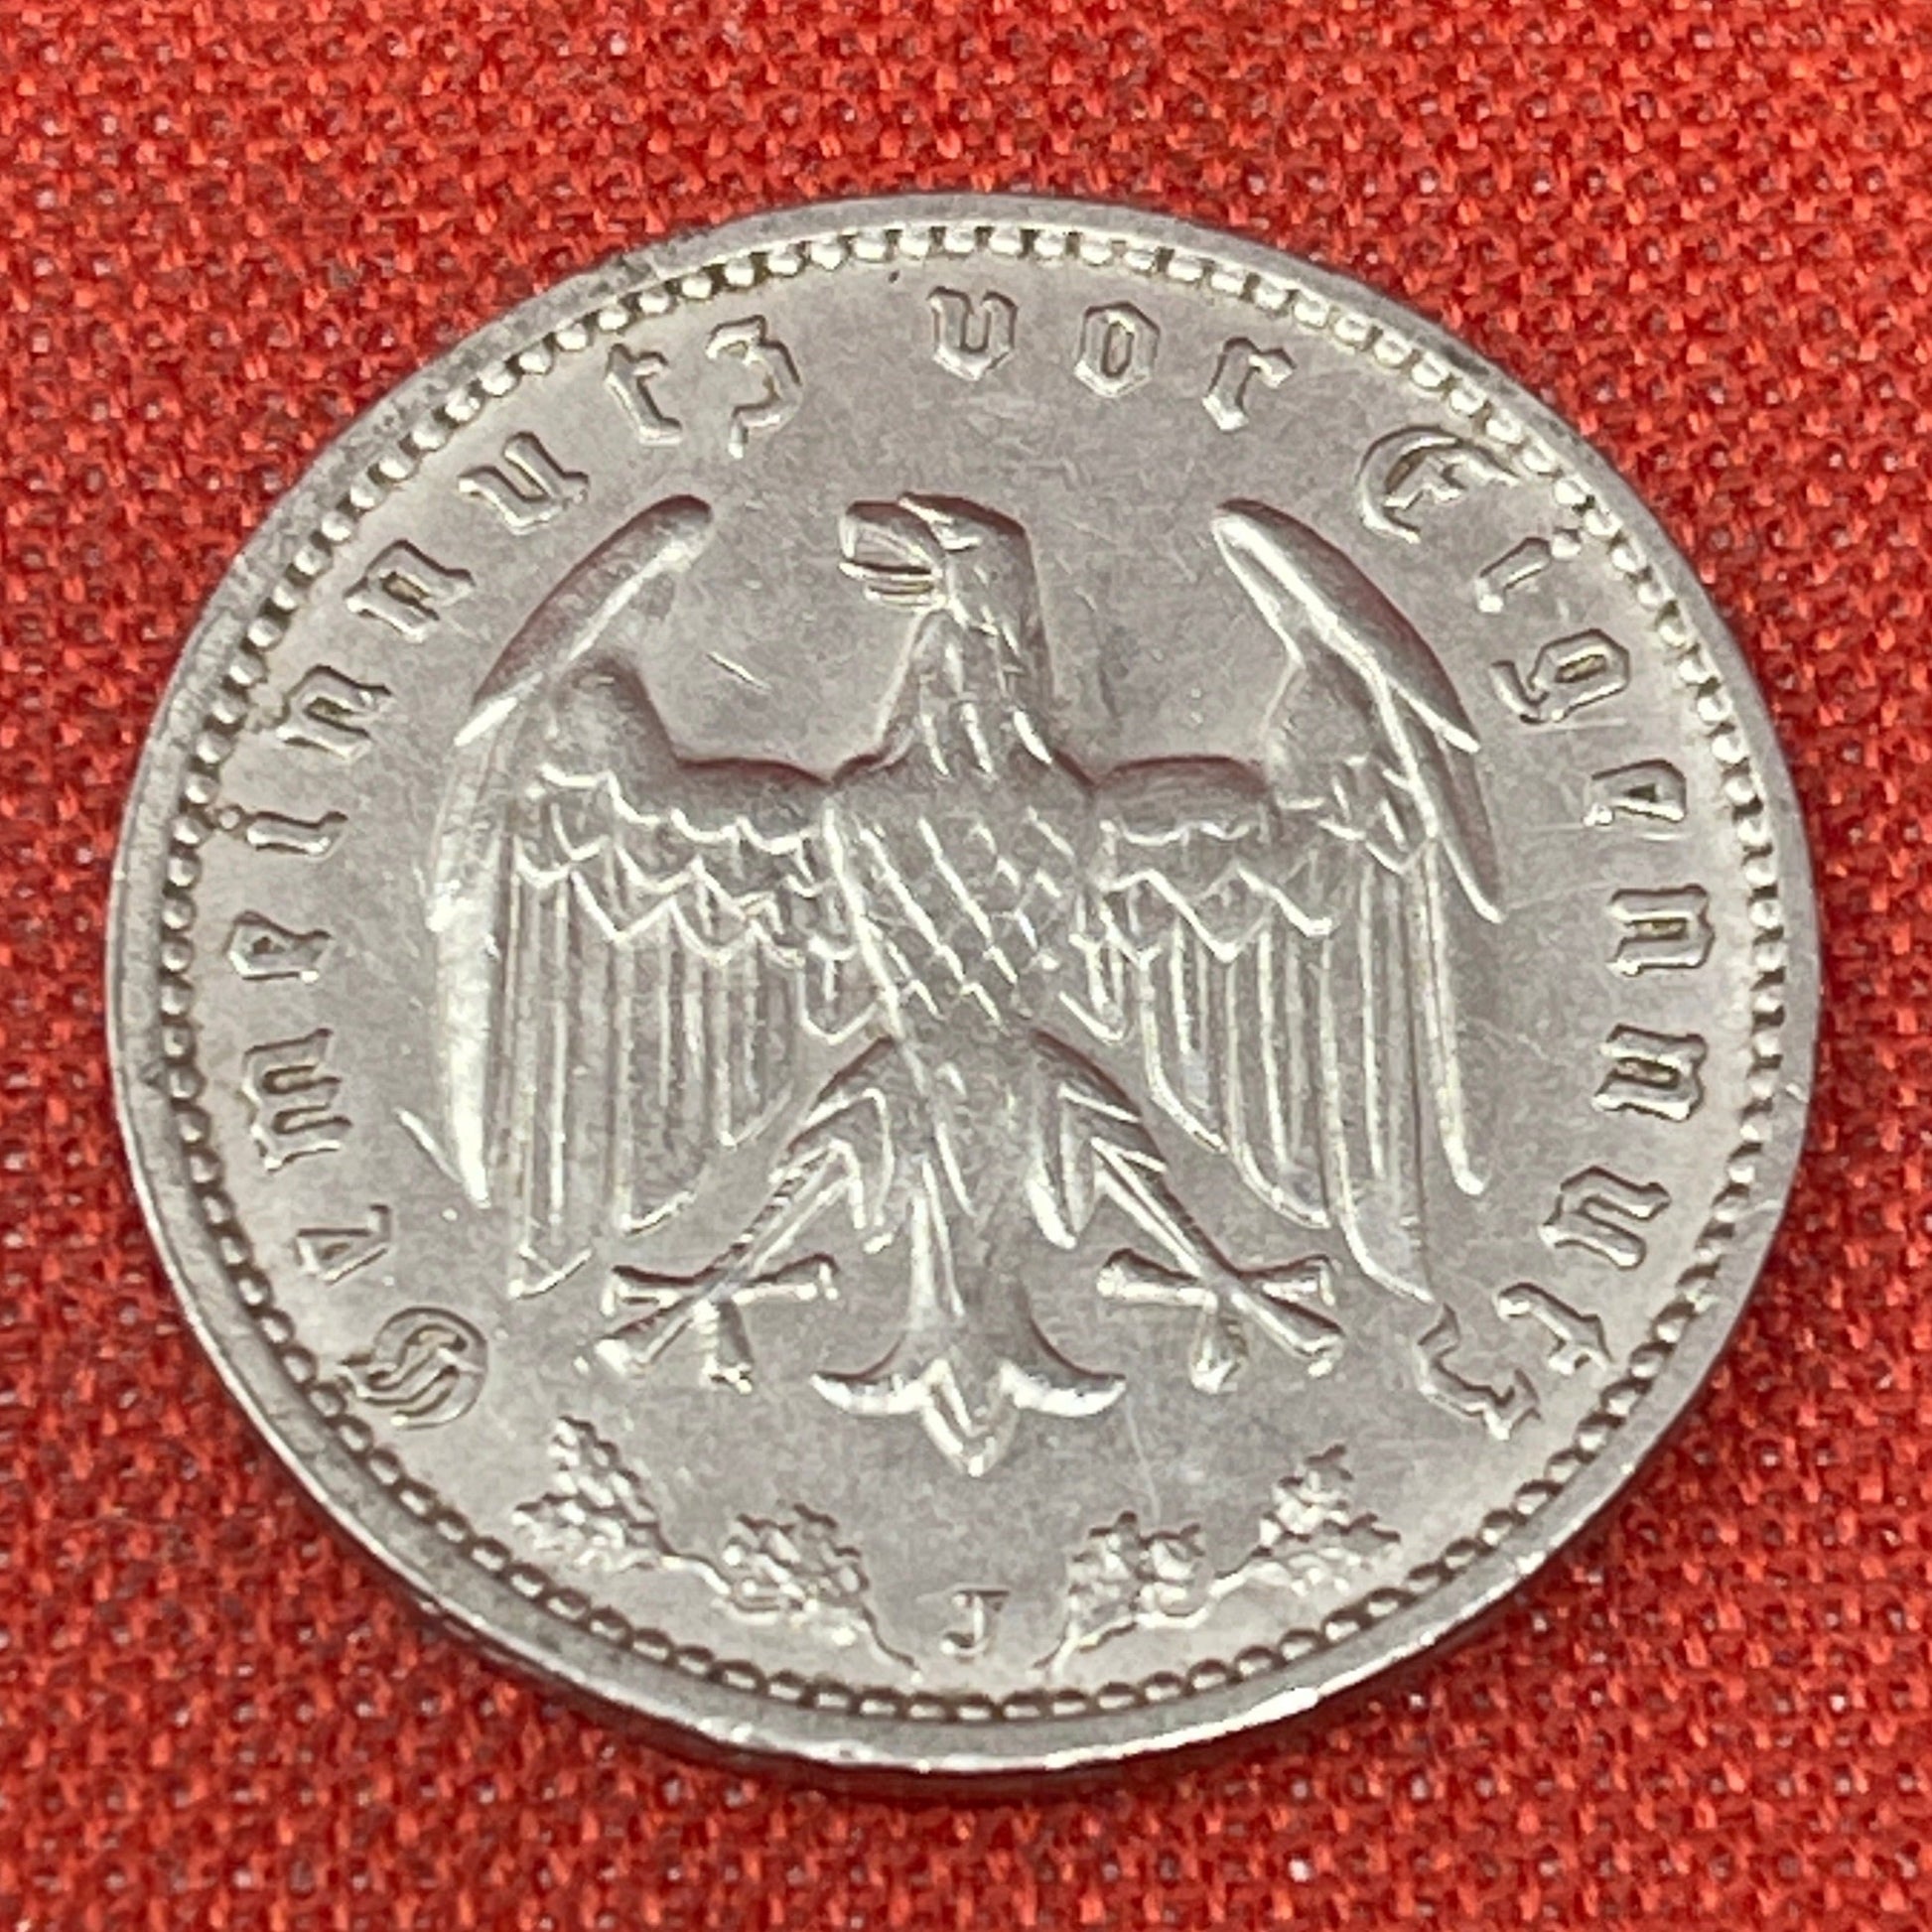 Germany - Third Reich 1 Reichsmark, 1933-1939